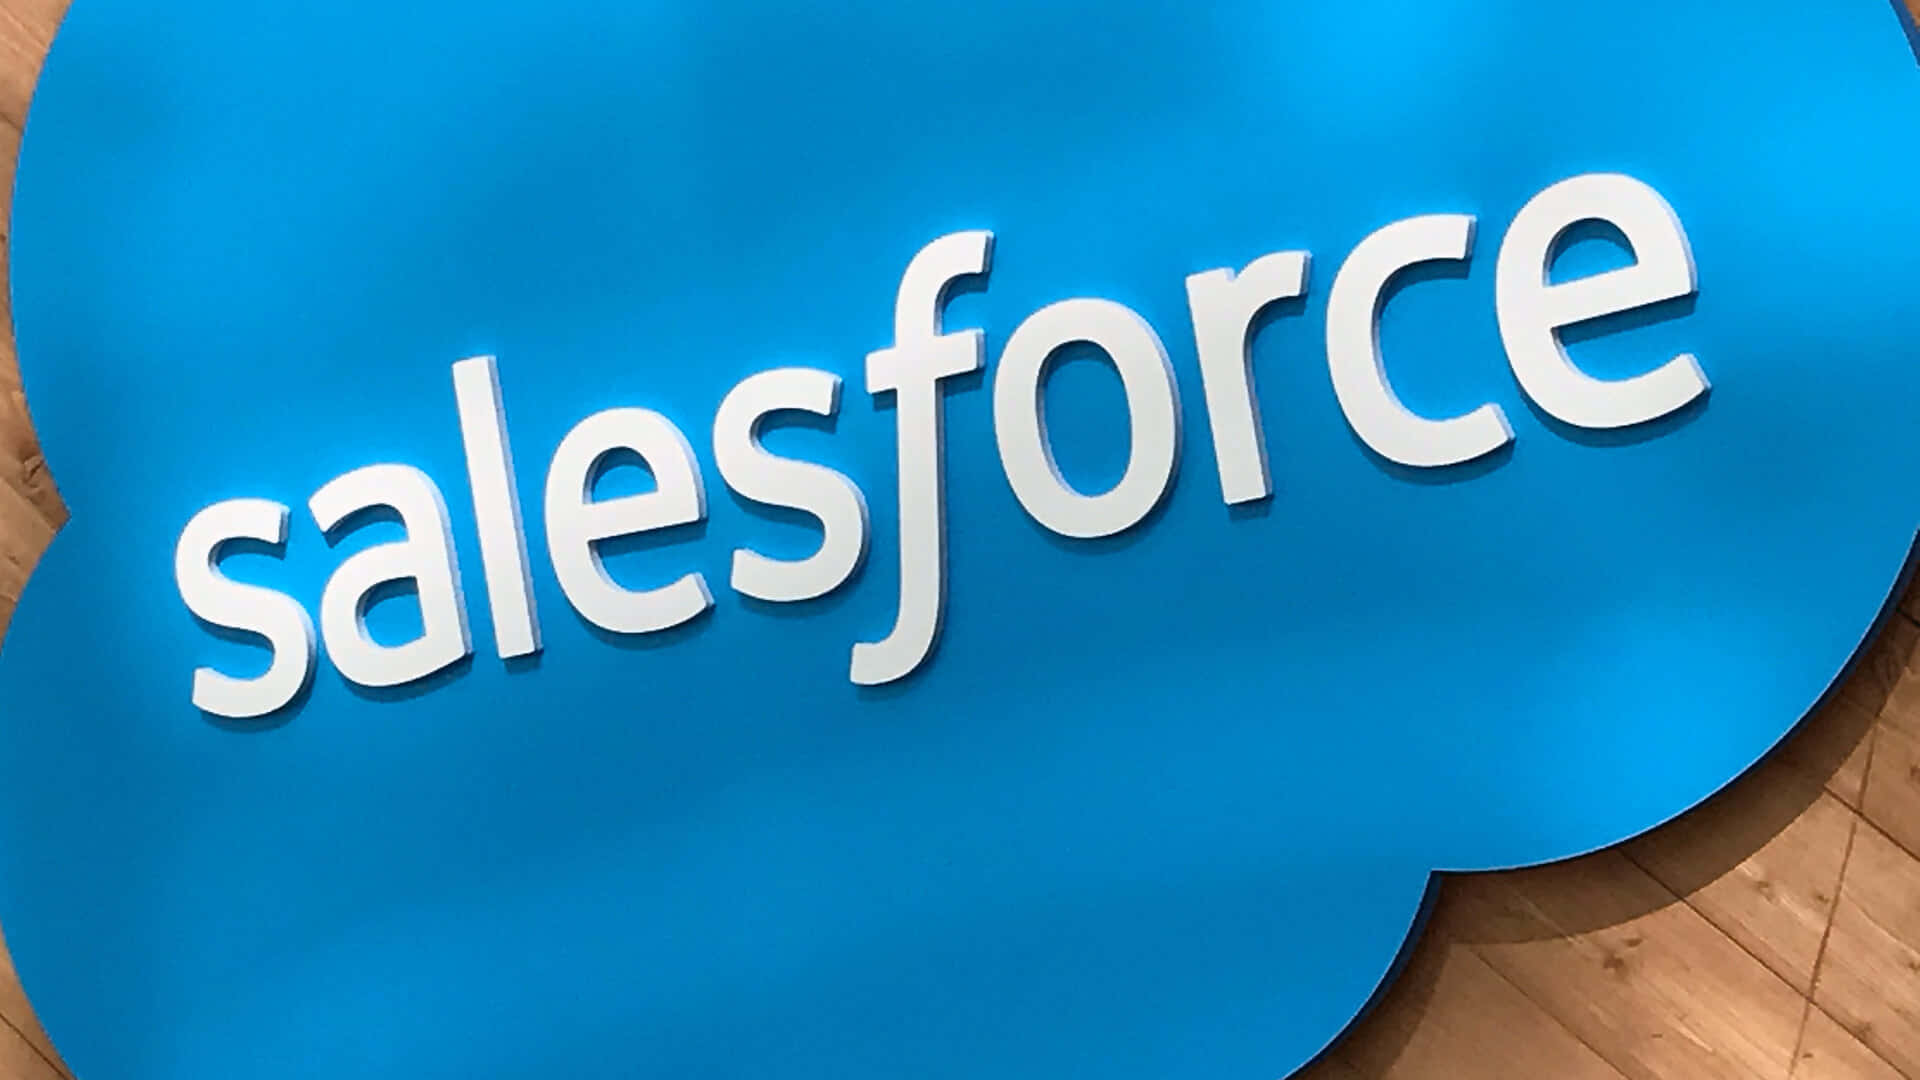 Salesforcelogotyp På En Vägg. Wallpaper